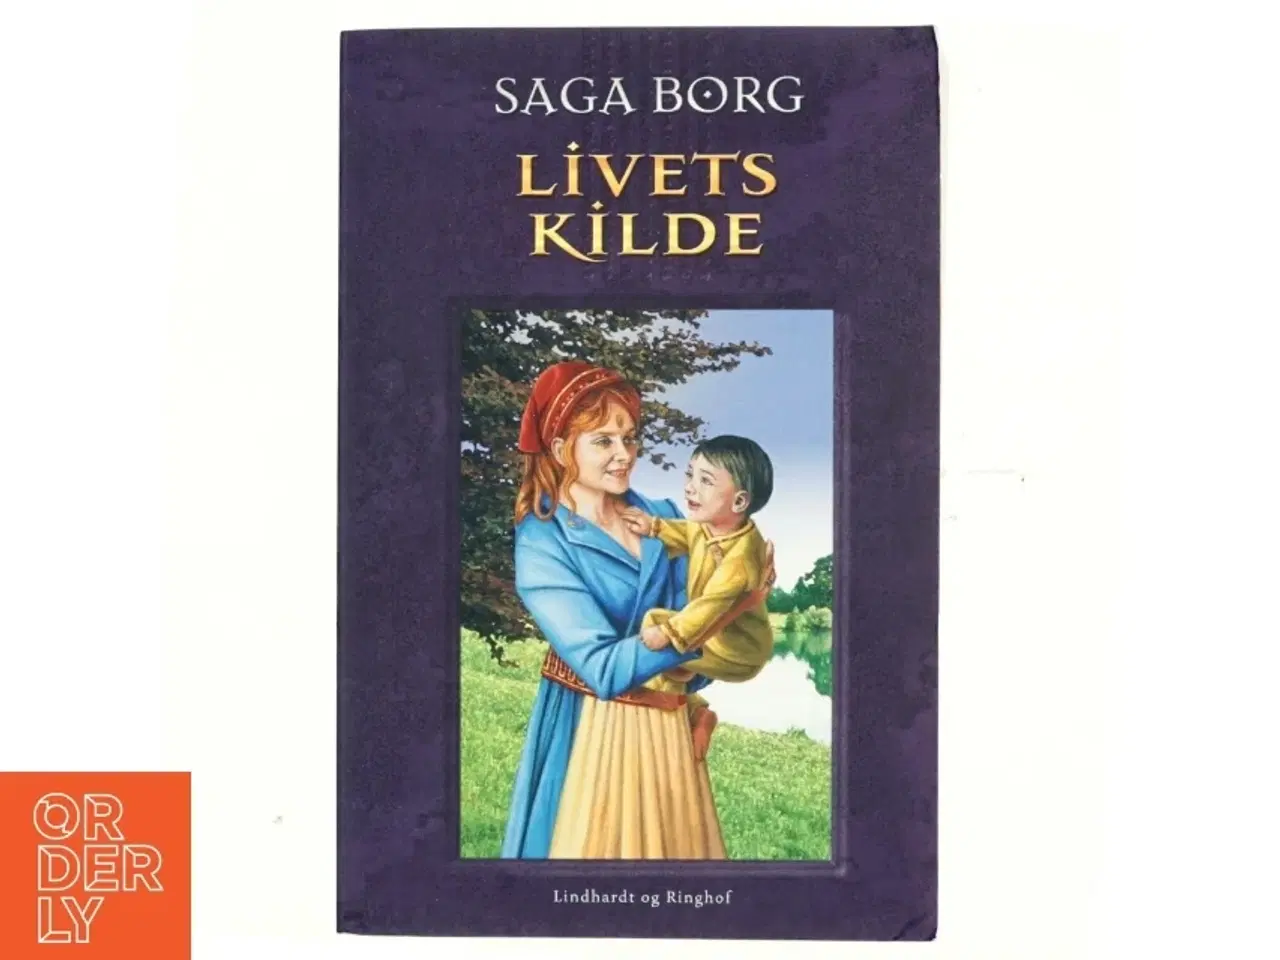 Billede 1 - Livets kilde af Saga Borg (Bog)